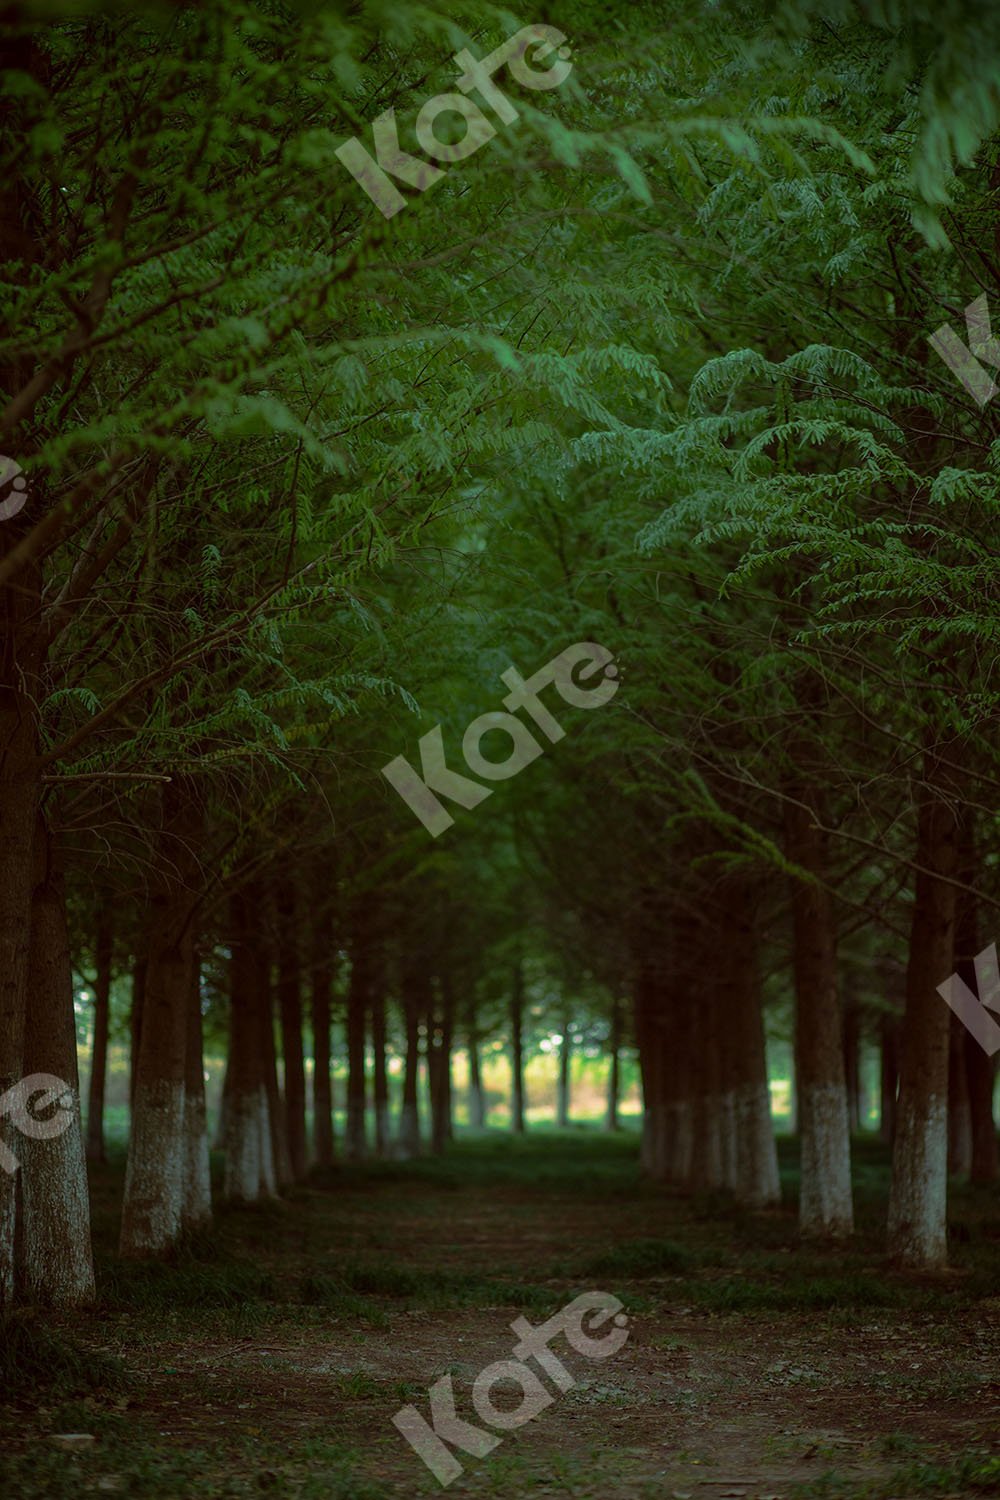 Kate Telón de fondo de verano Camino forestal diseñado por Emetselch